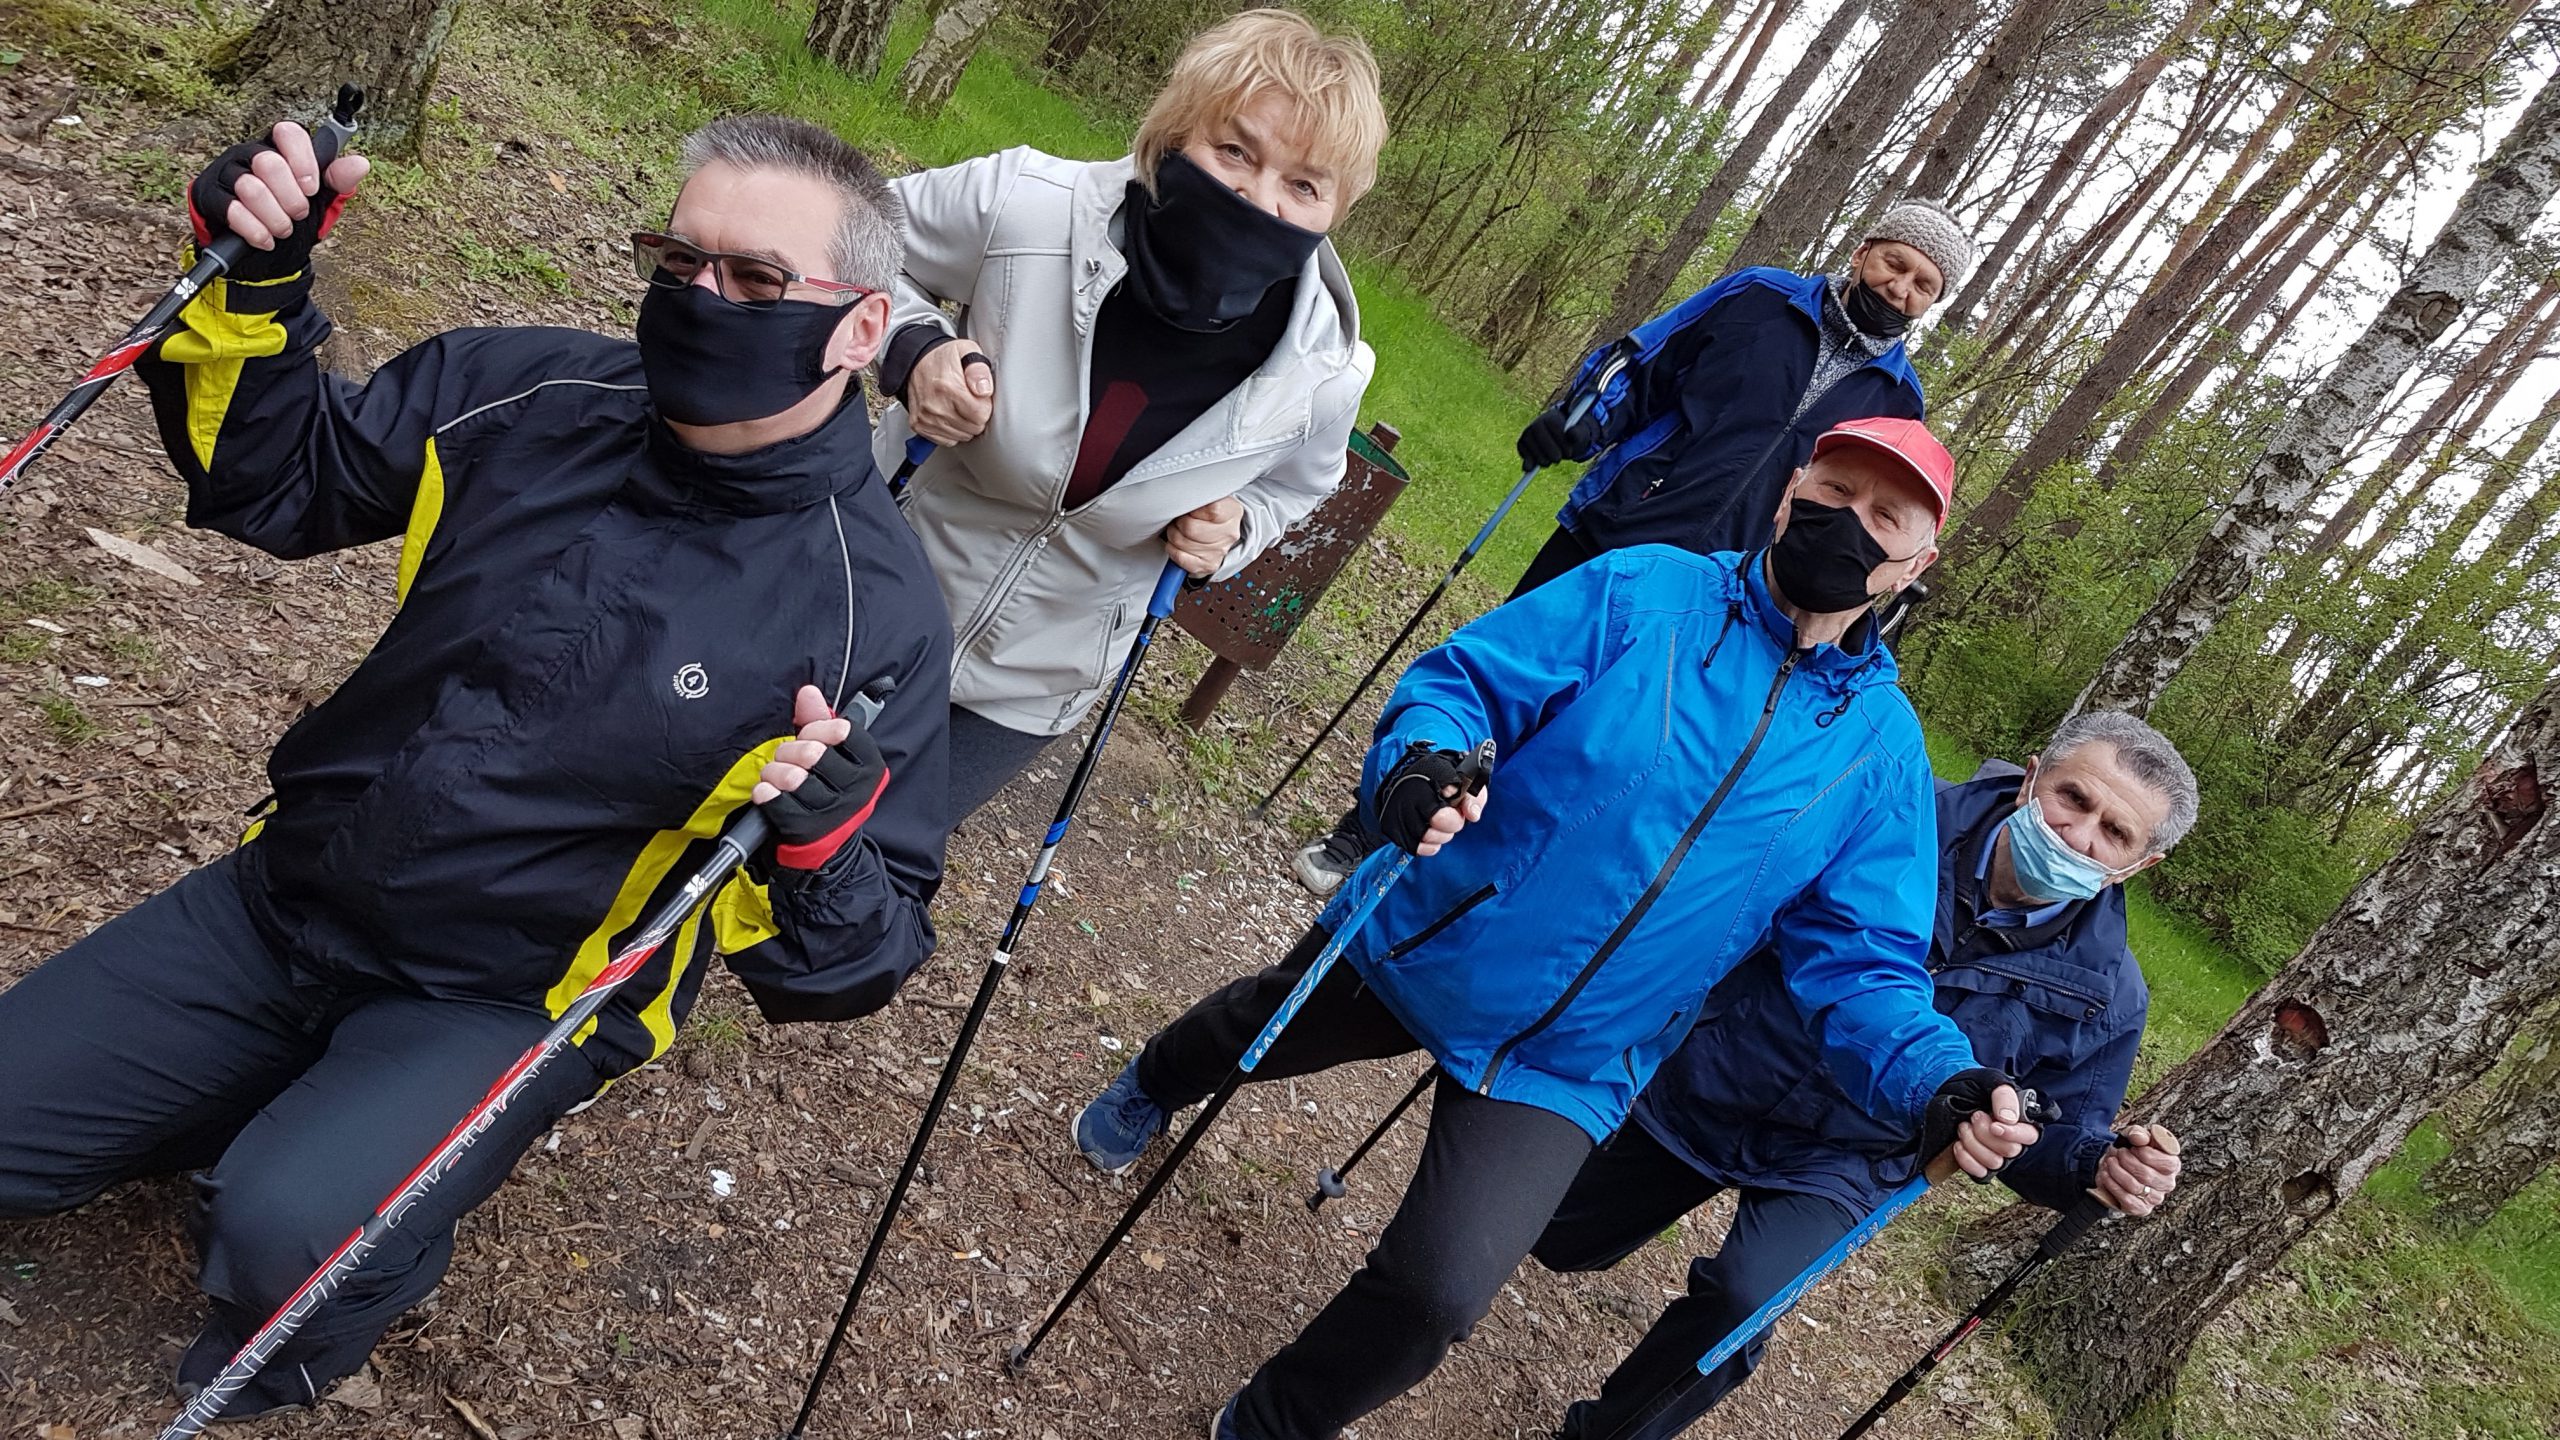 pięć osób podczas uprawniania sportu w lesie